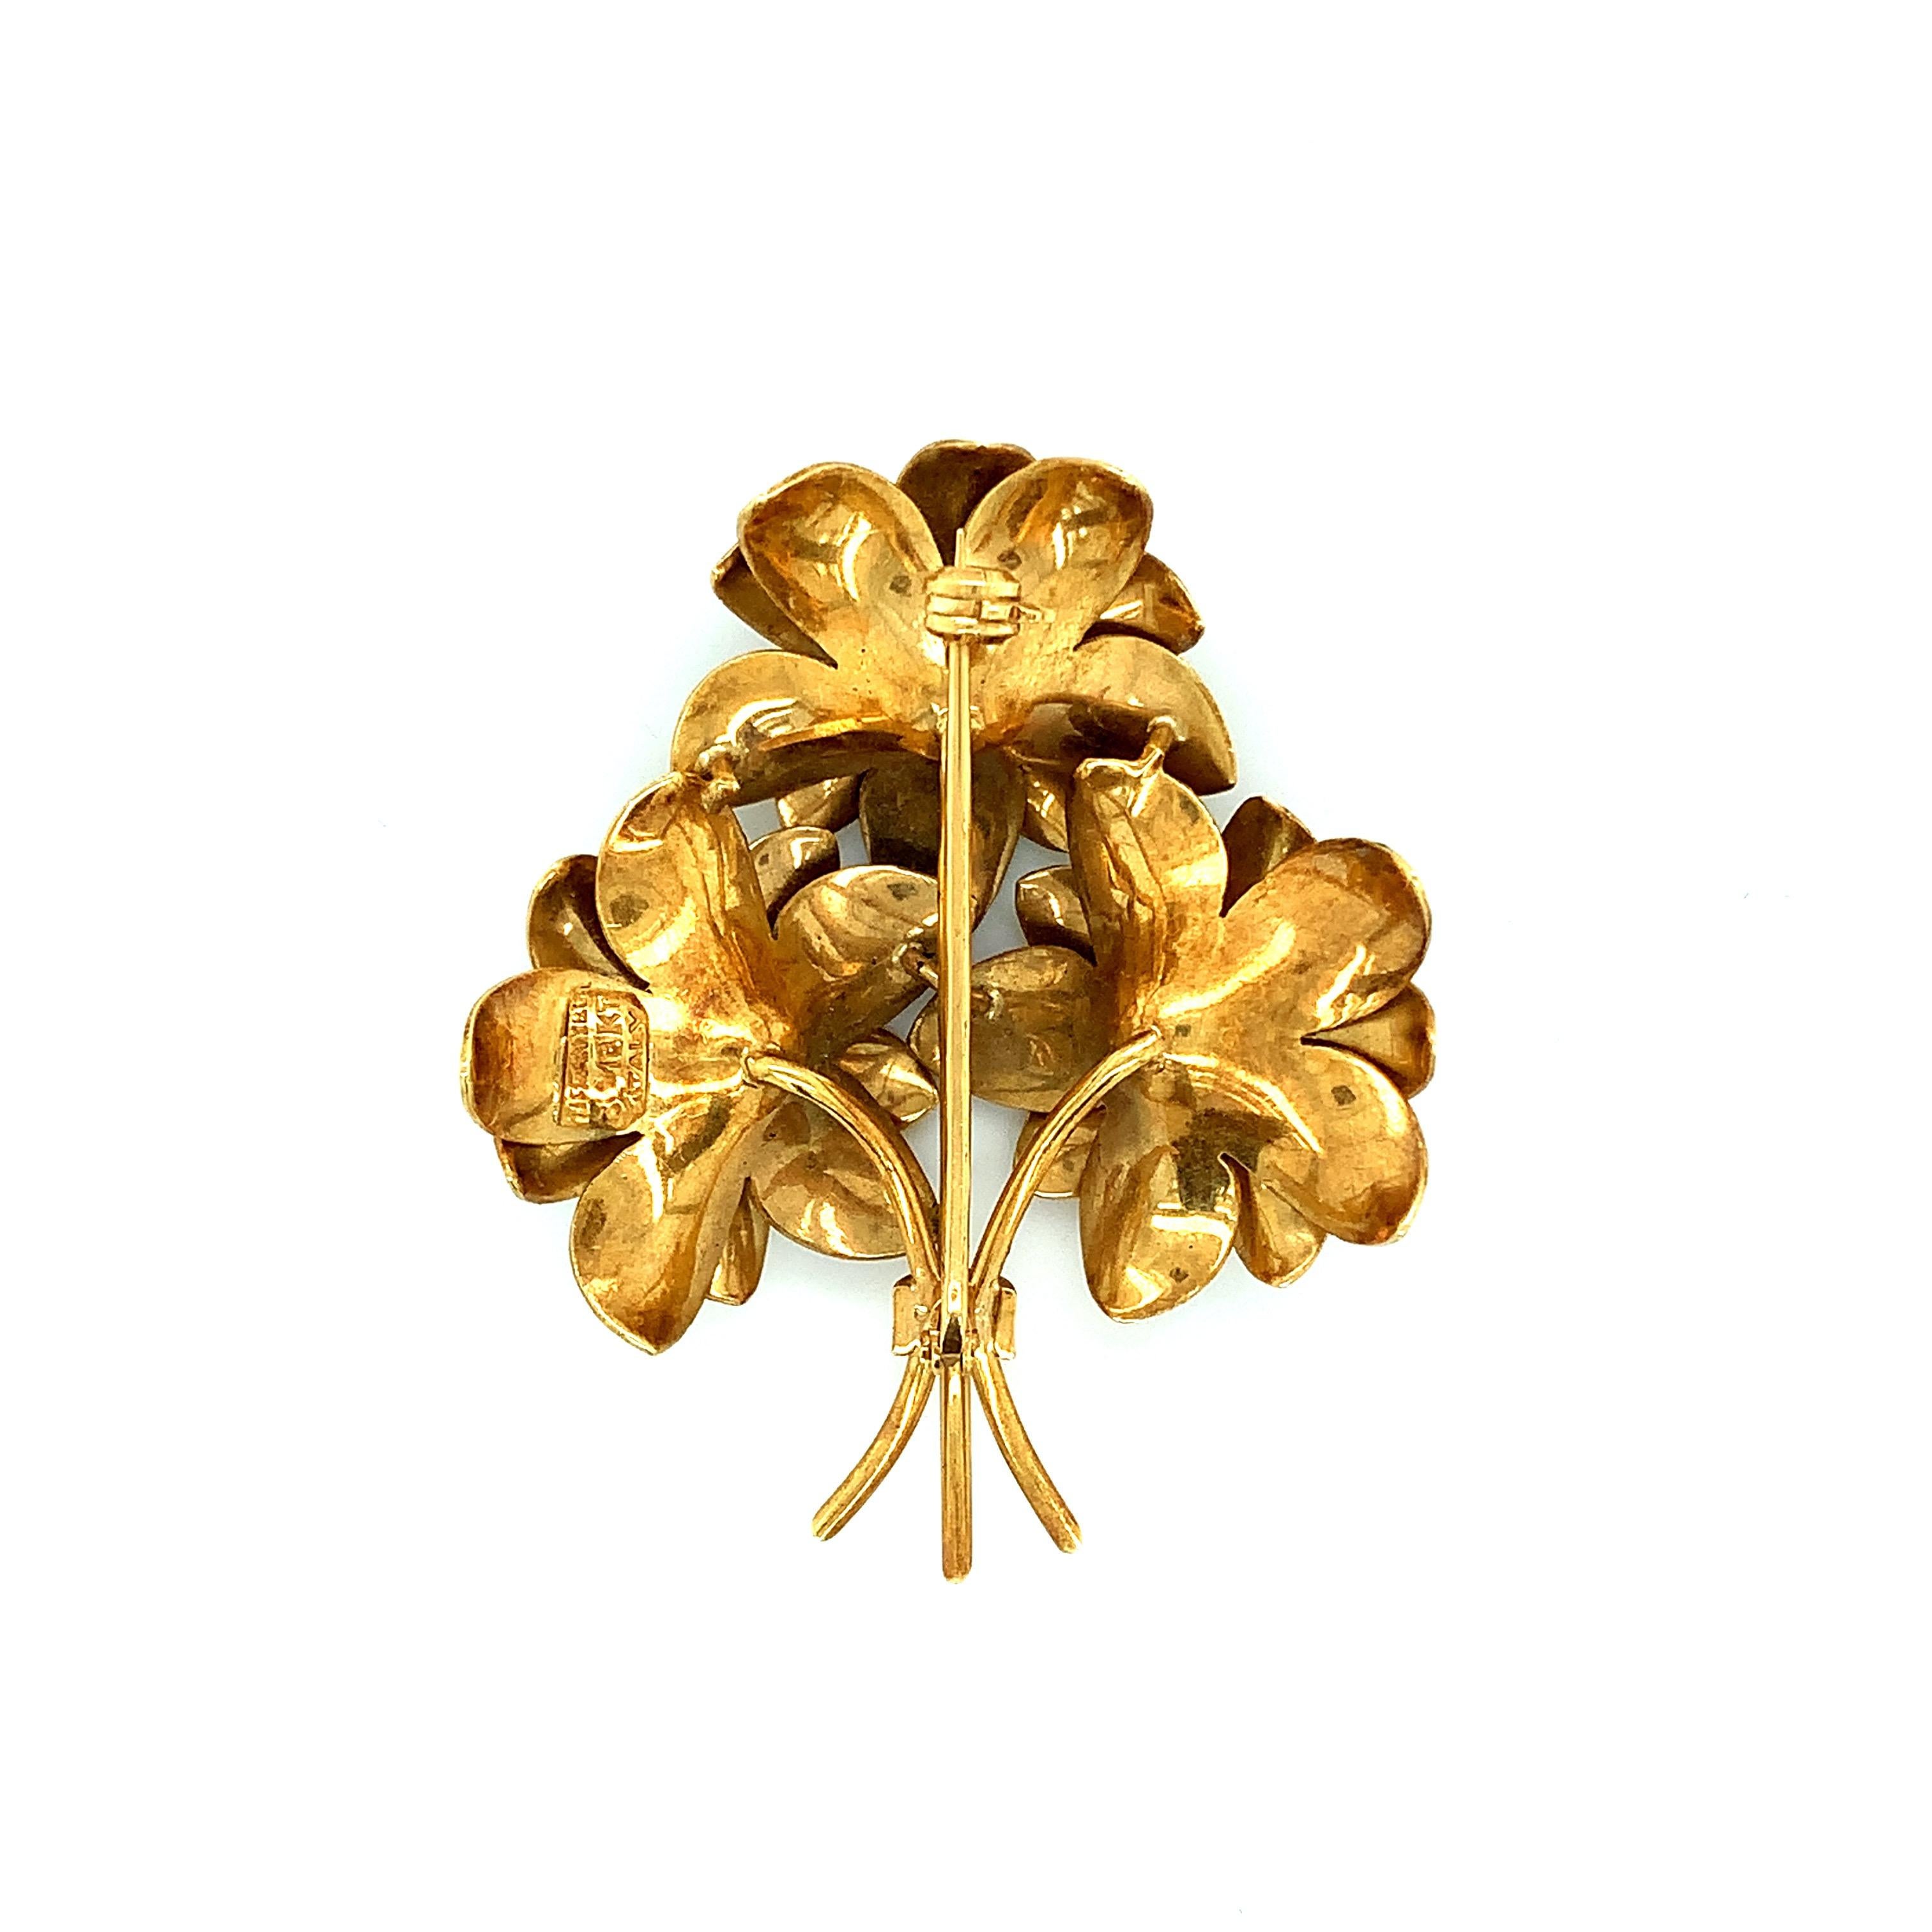 Tiffany & Co. Brosche aus 18 Karat Gelbgold mit einem Blumenbouquet. Hergestellt in Italien. Gezeichnet: Tiffany & Co. / 18K / Italien. Gesamtgewicht: 16,9 Gramm. Breite: 1,5 Zoll. Länge: 1,88 Zoll. 